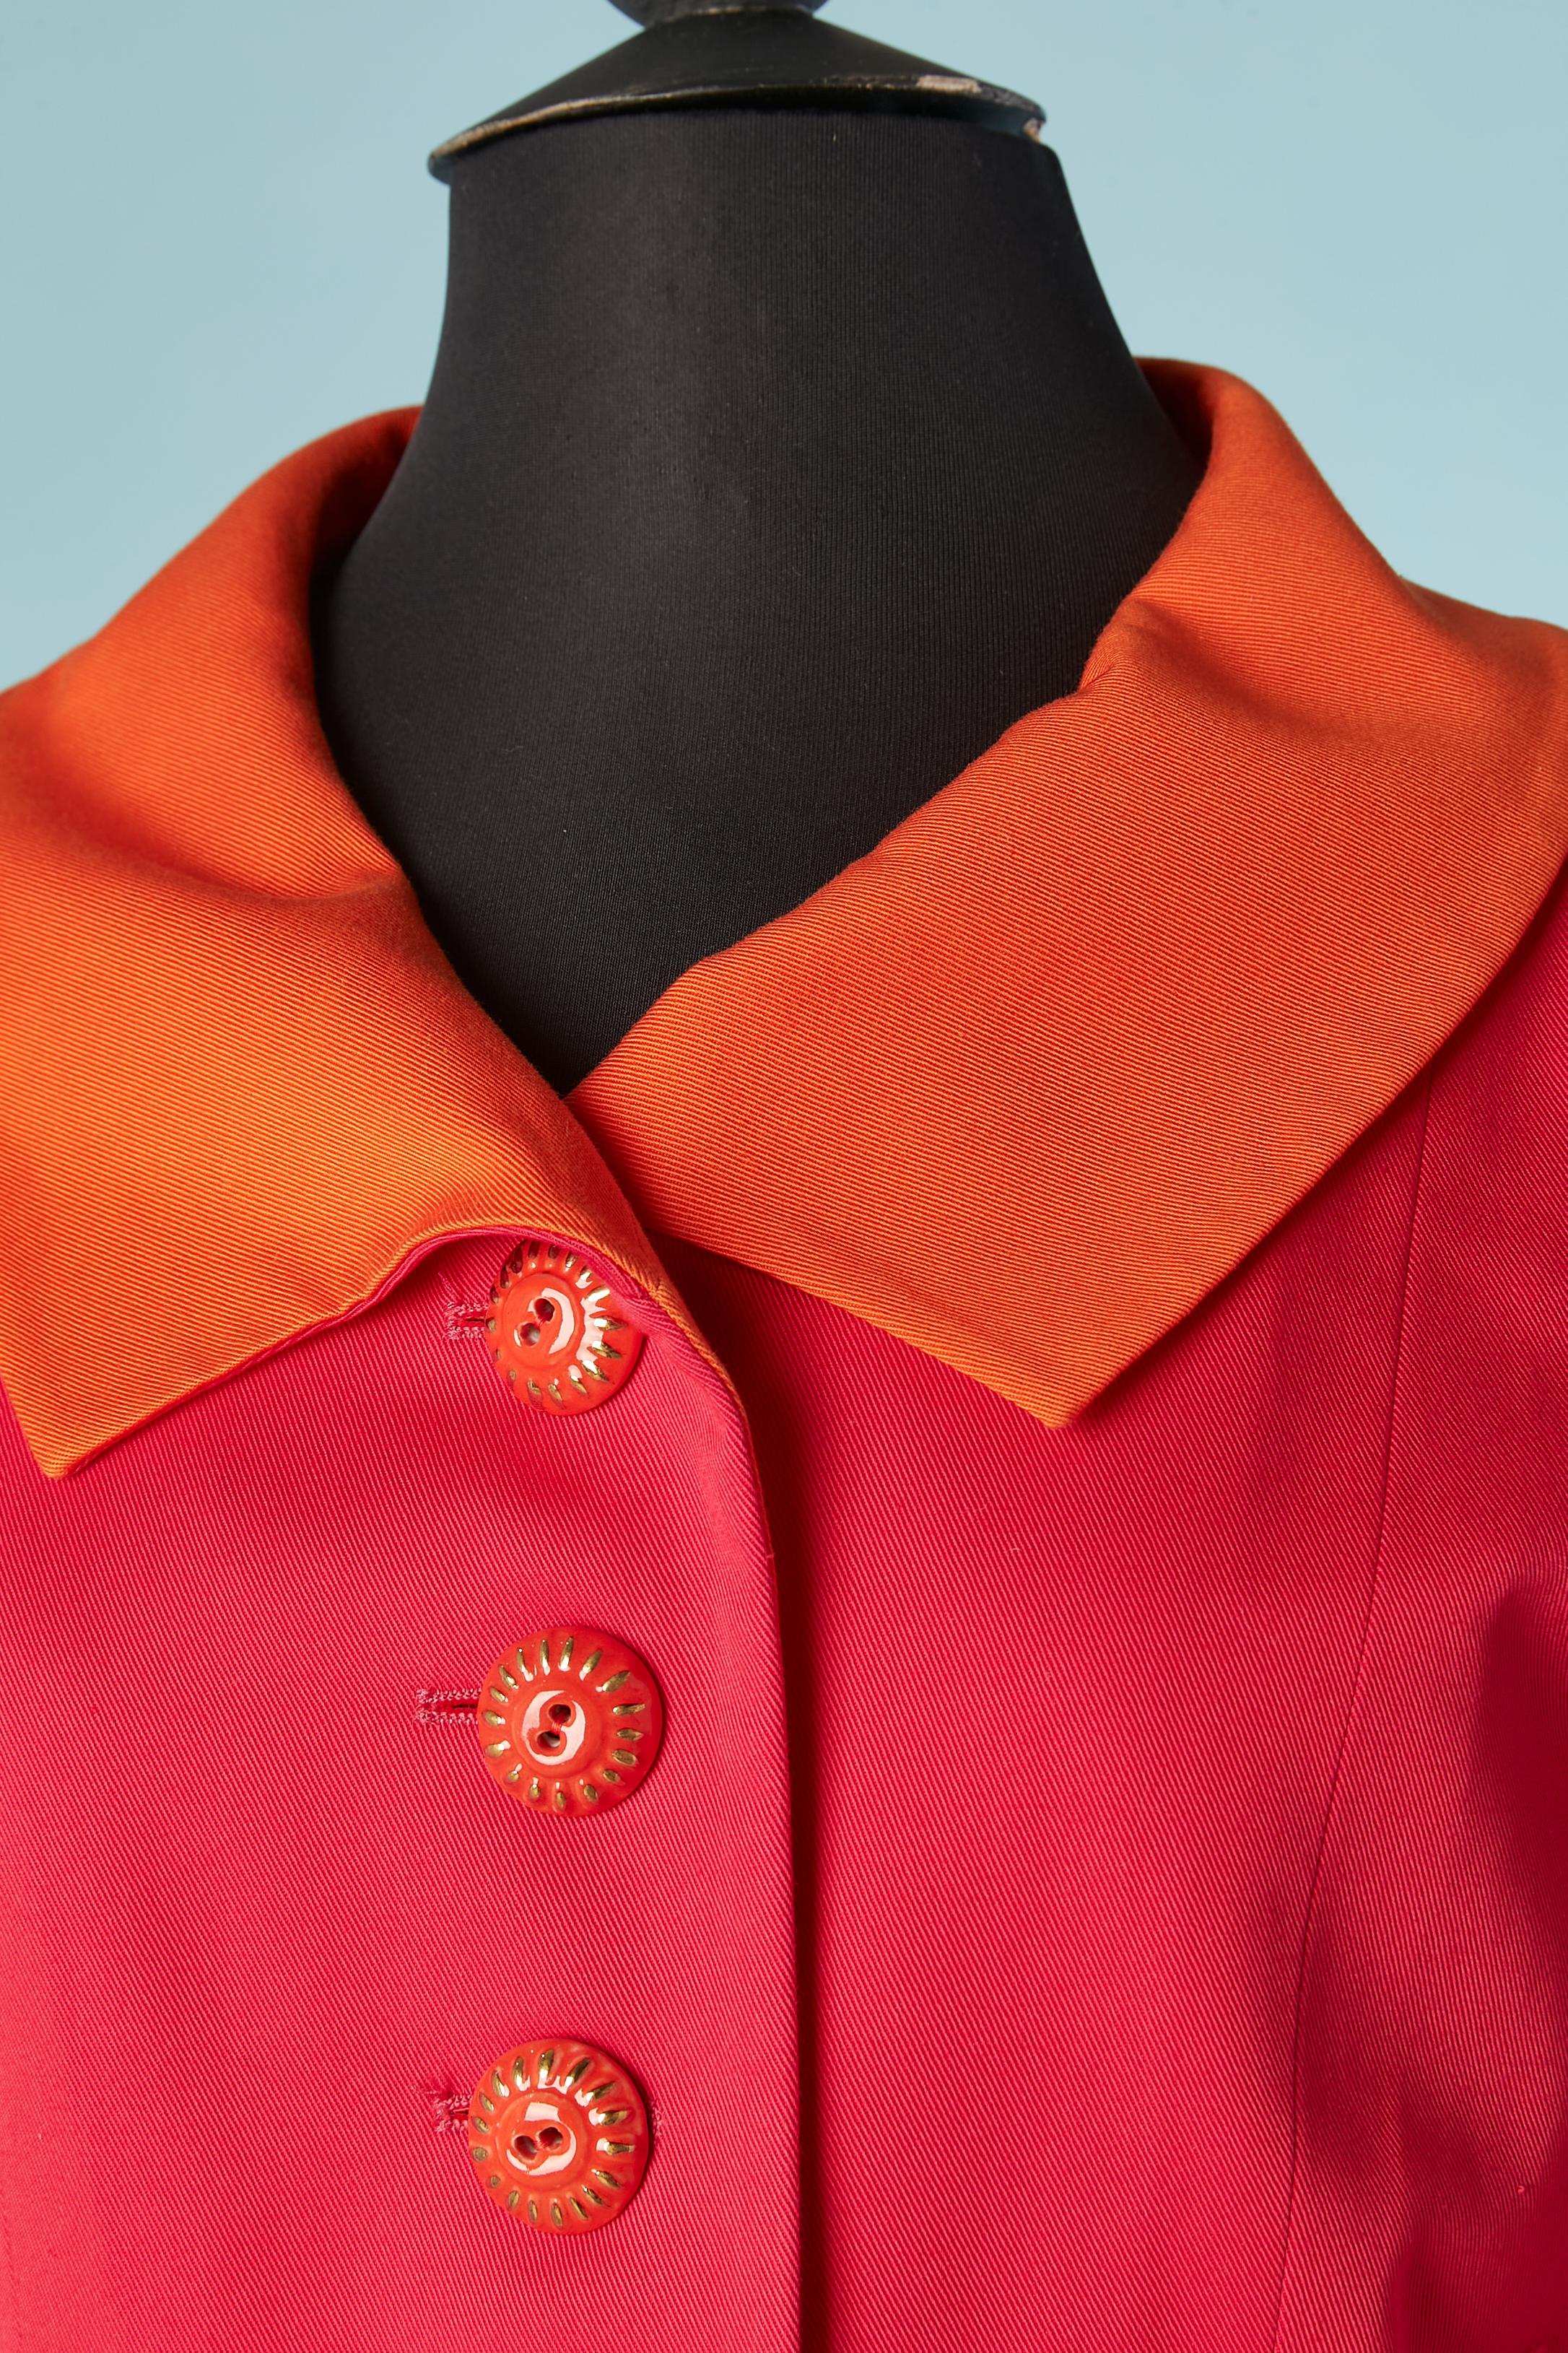 Jacke in Orange und Fushia mit Keramikknöpfen. Zusammensetzung des Hauptgewebes: 100% Baumwolle, Futter: Acetat und Viskose. 
Schulterpads. Halbgürtel mit 2 Knöpfen in der hinteren Mitte. 
SIZE 36 auf dem Etikett, passt aber eher M/L